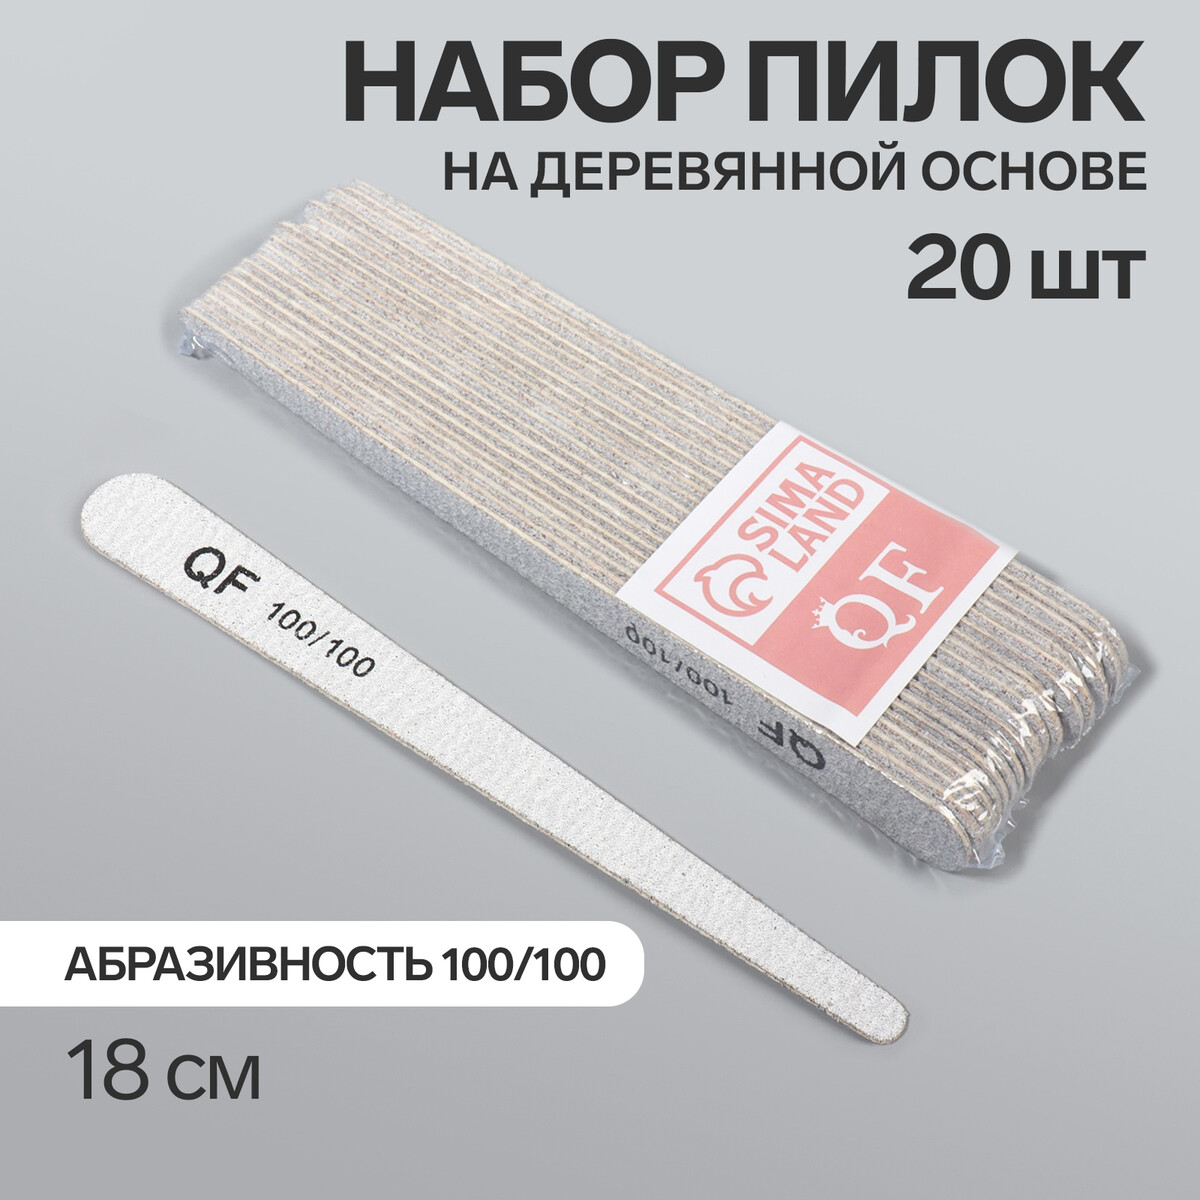 Пилка-наждак, набор 20 шт, деревянная основа, абразивность 100/100, 18 см, цвет серый основа и сменные файлы для пилки 18 см 10 шт абразивность 80